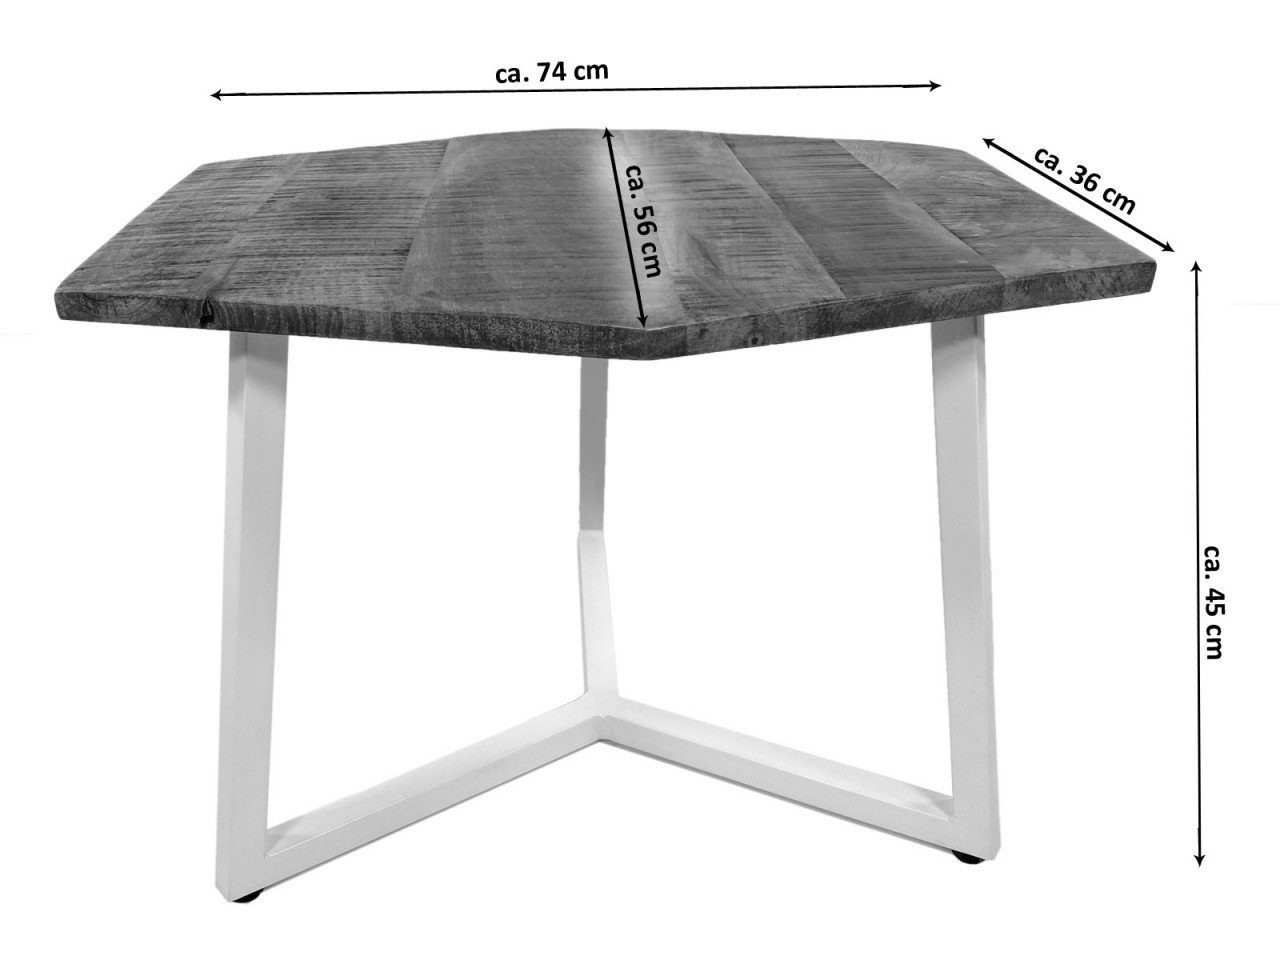 Couchtisch cm x 56 Tisch nachhaltig Wohnzimmer Couchtisch soma 74